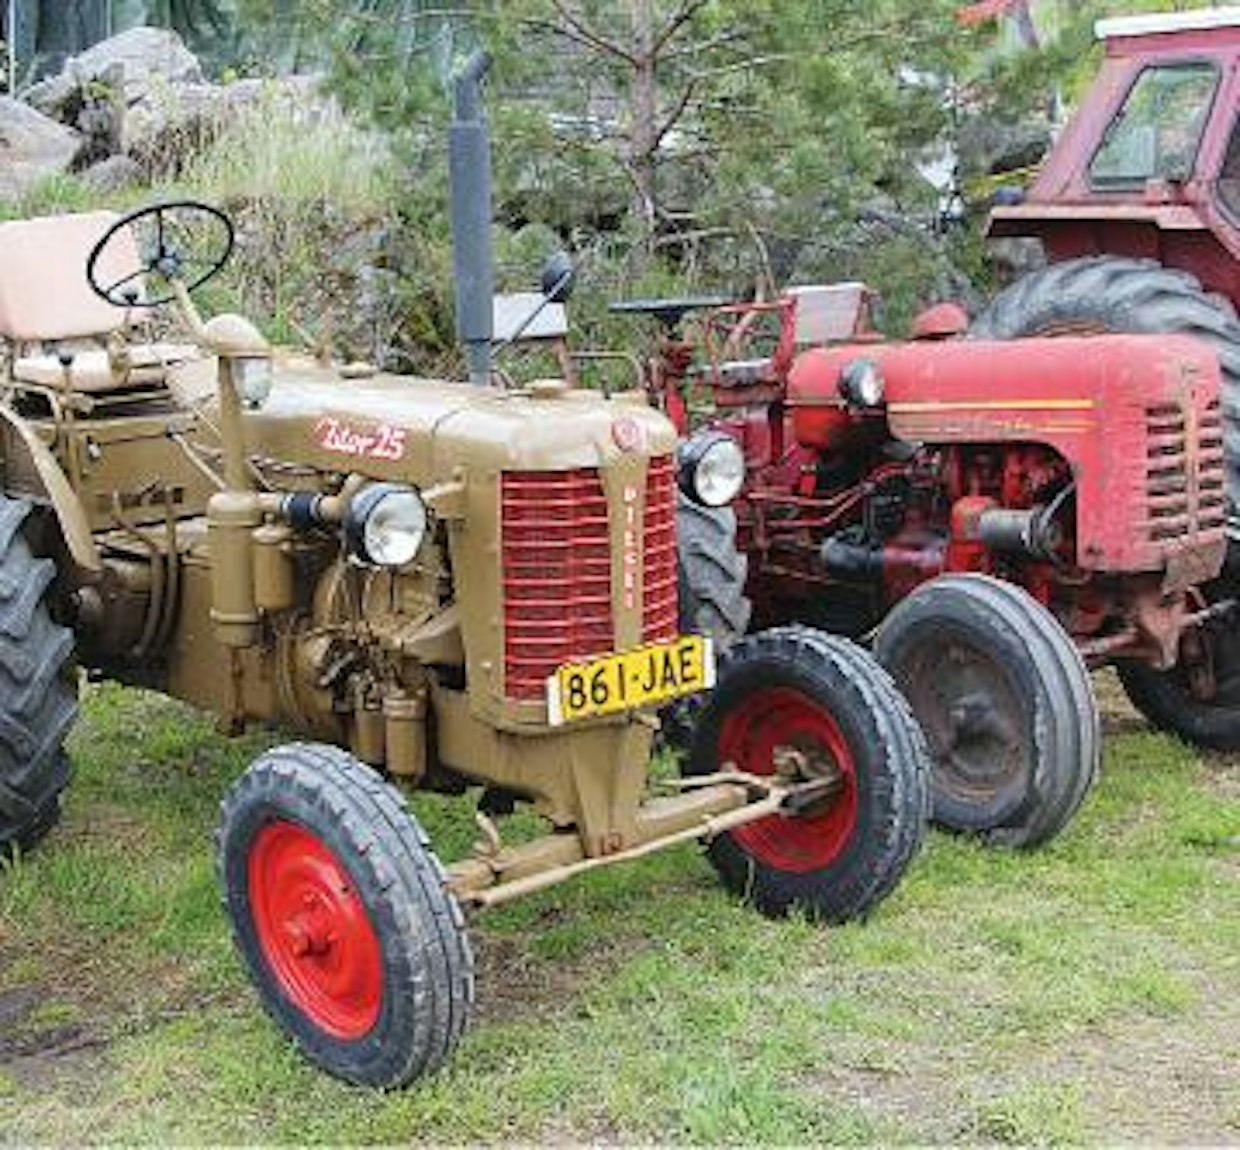 Joitakin traktorimerkkejä piti 1950-luvulla jonottaa jopa vuosien ajan, mutta lyhin tie traktorin omistajaksi oli niillä, jotka olivat päätyneet tai paremminkin joutuneet ostamaan Zetorin tai HTZ DT-14:n, eli Täystuhon. Kummallakin hoituivat työt jotenkuten, Zetorilla varmasti paljon helpommin, mutta englantilaiset ja useimmat saksalaisetkin traktorit olivat paljon kätevämpiä. Kuvan Zetor on alkuperäistä 25-mallia, minkä erottaa suorasta etuakselista.